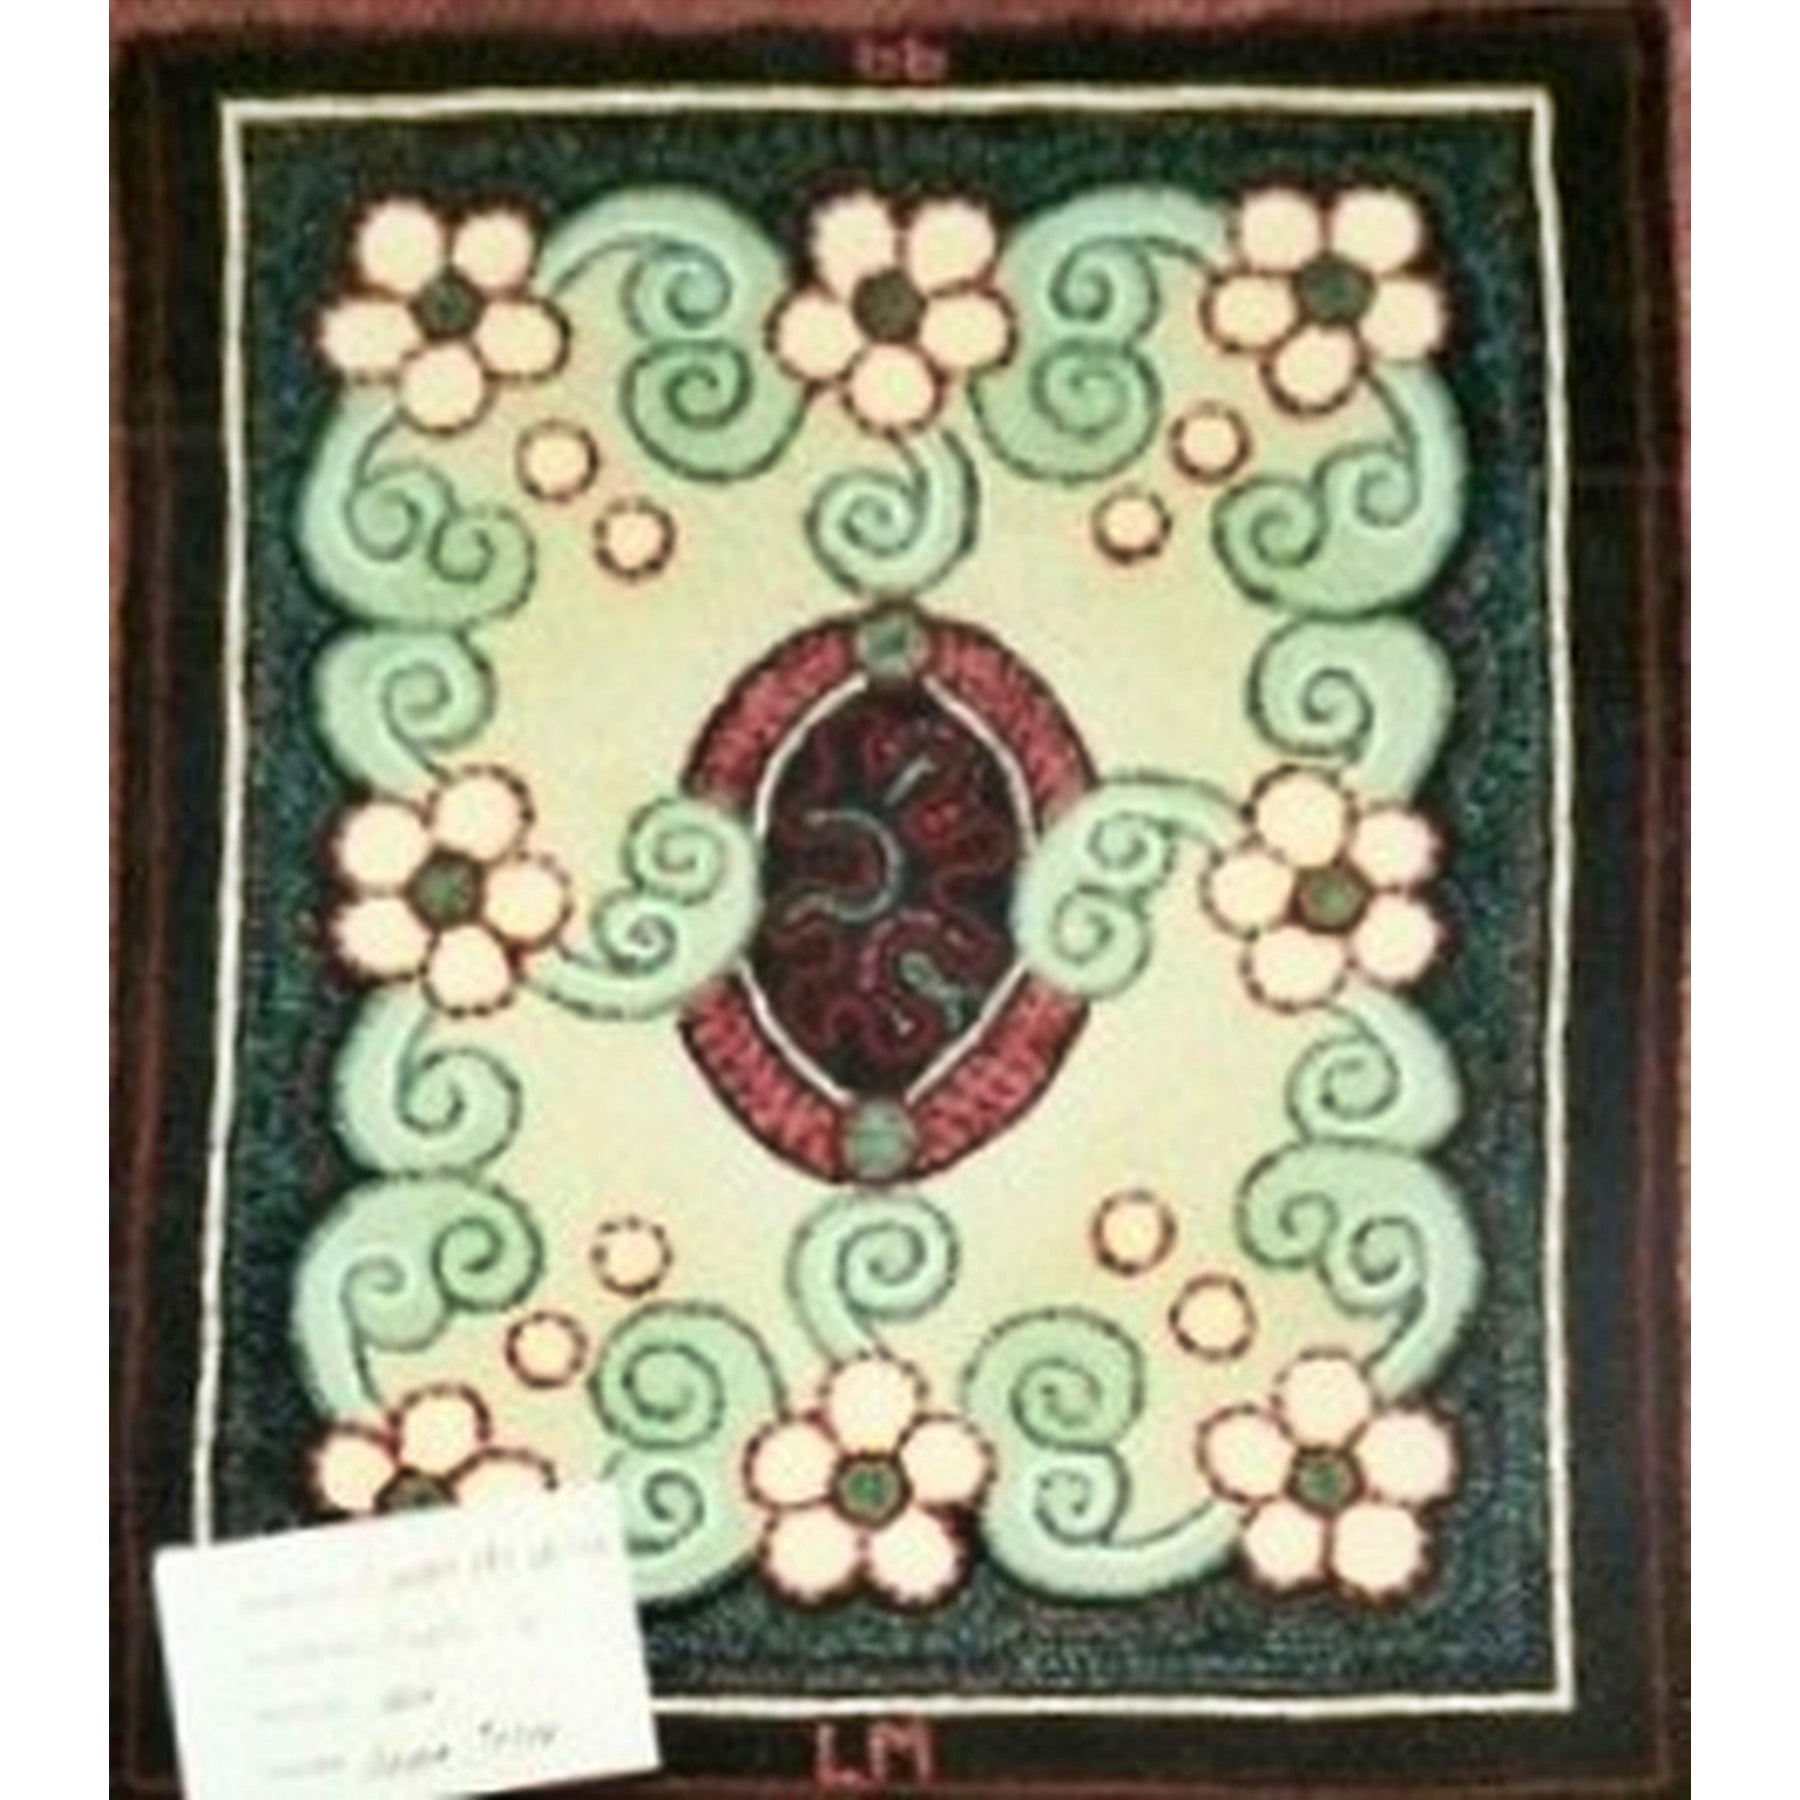 Curli-Q, rug hooked by Lynne Mishler